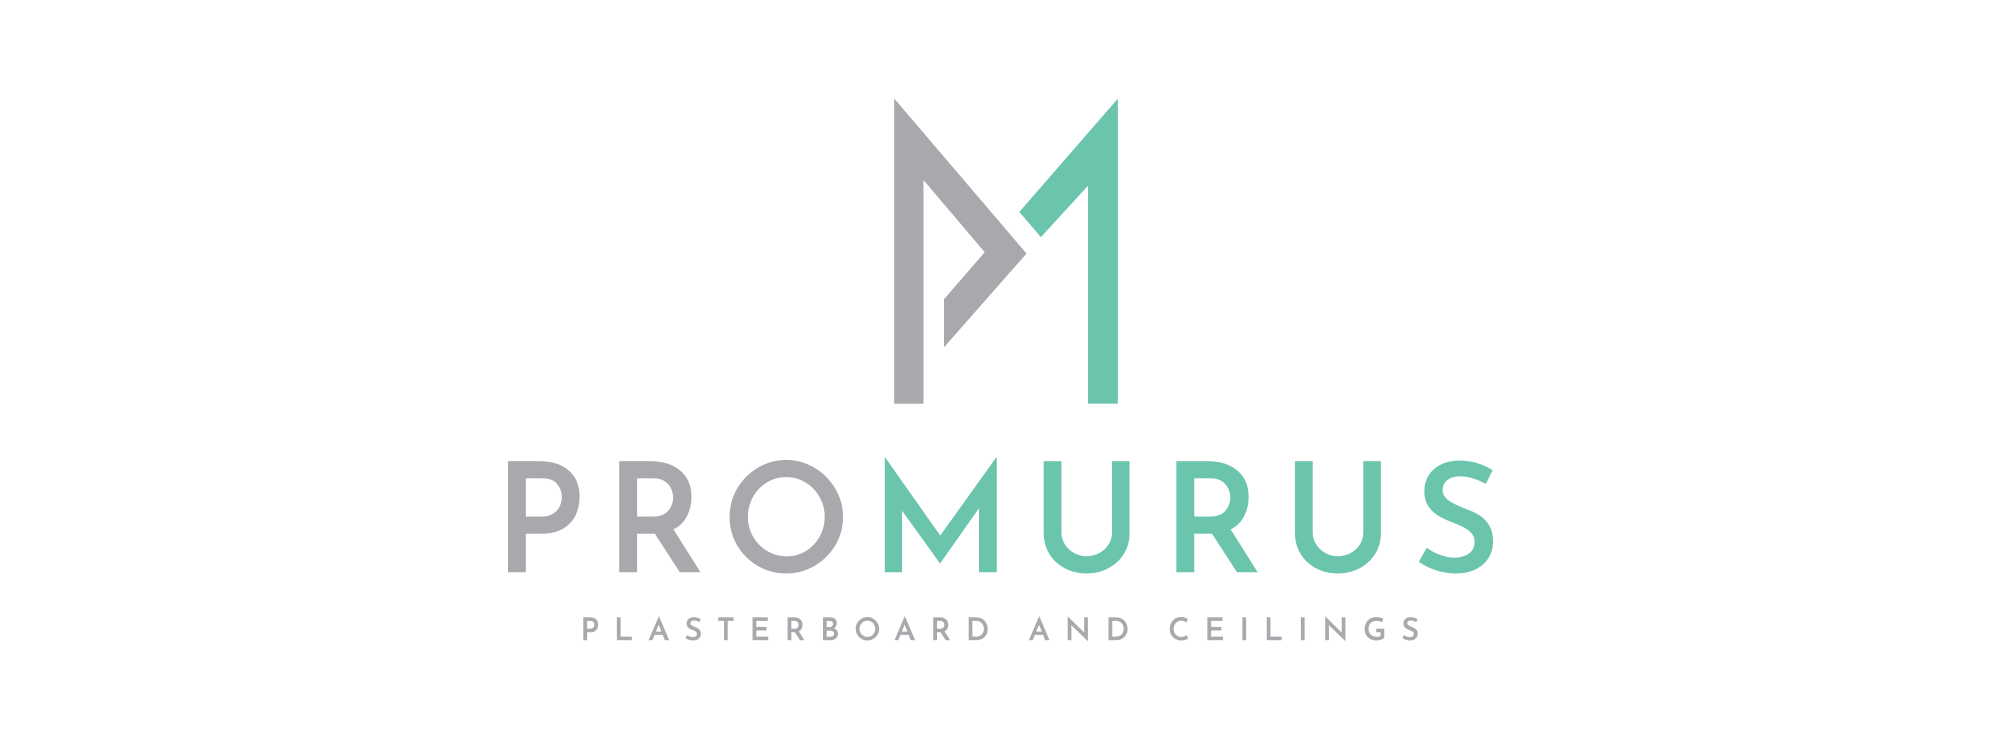 Promurus